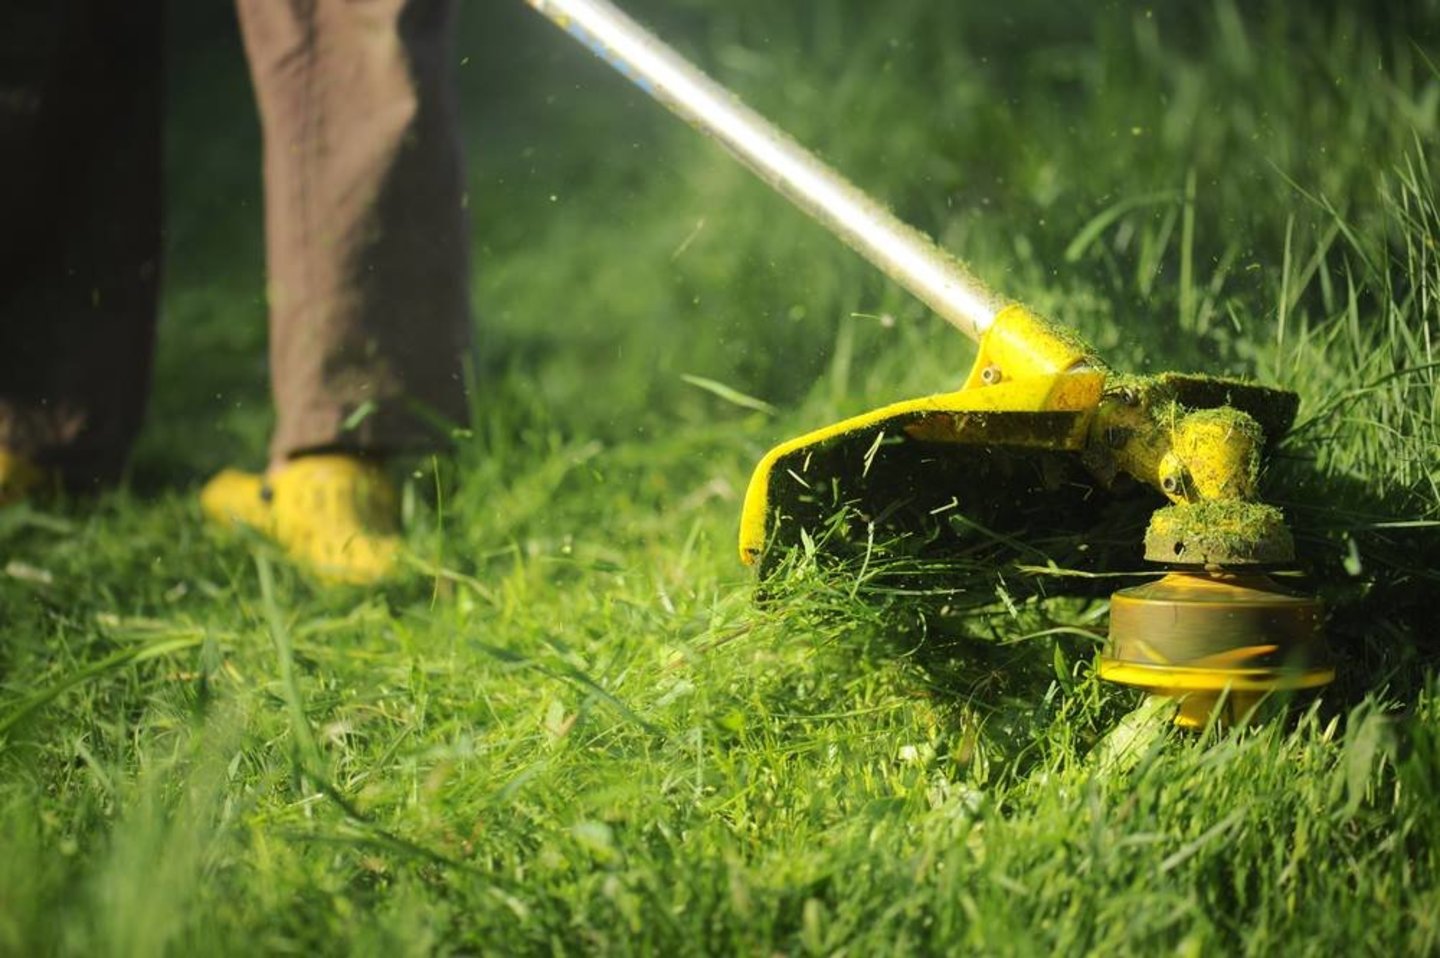  Tikėtina, kad net ir tinkamai prižiūrėdami savo veją, padarote tam tikrų klaidų, dėl kurių anksčiau ar vėliau iškyla vejos dekoratyvumo problemų.<br> „Shutterstock“ nuotr.